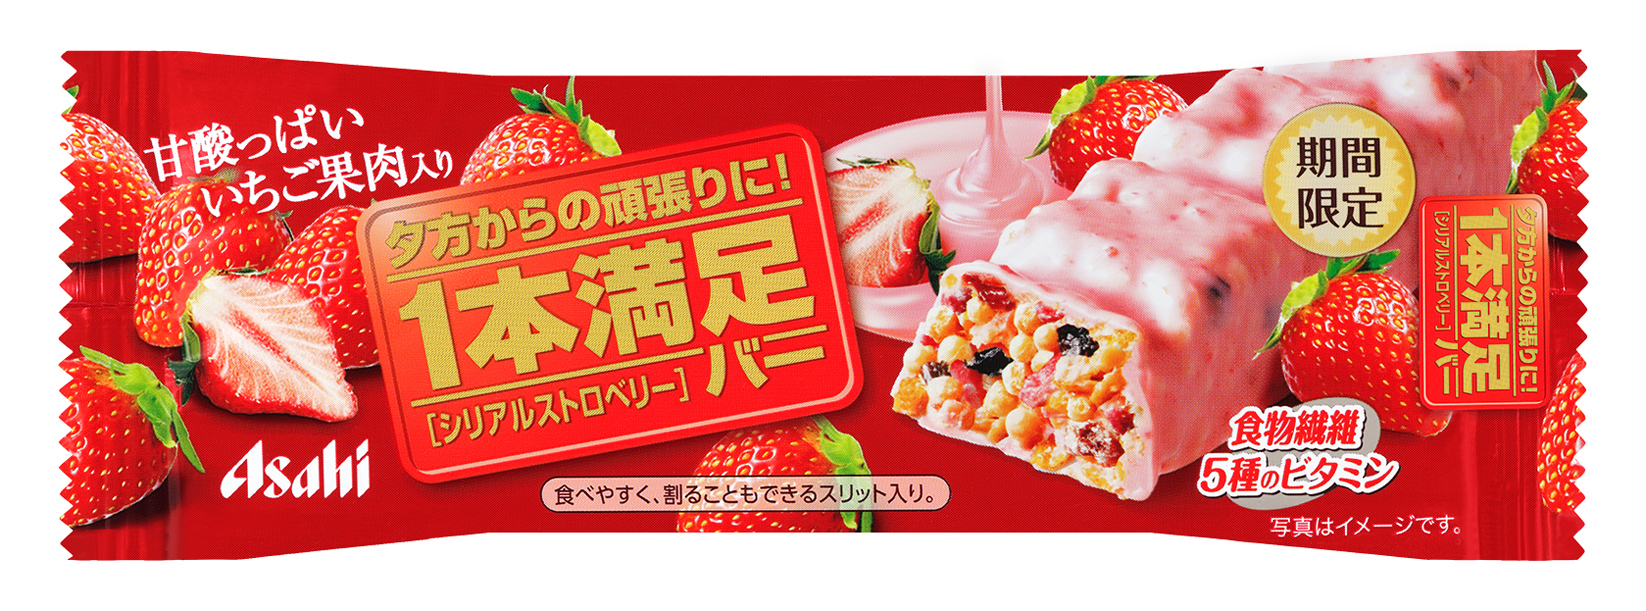 Asahi ซีเรียลบาร์ สตรอเบอร์รี่ ธัญพืชอัดแท่ง Ippon Manzoku Cereal Bar Strawberry เส้นใยอาหาร&วิตามิน